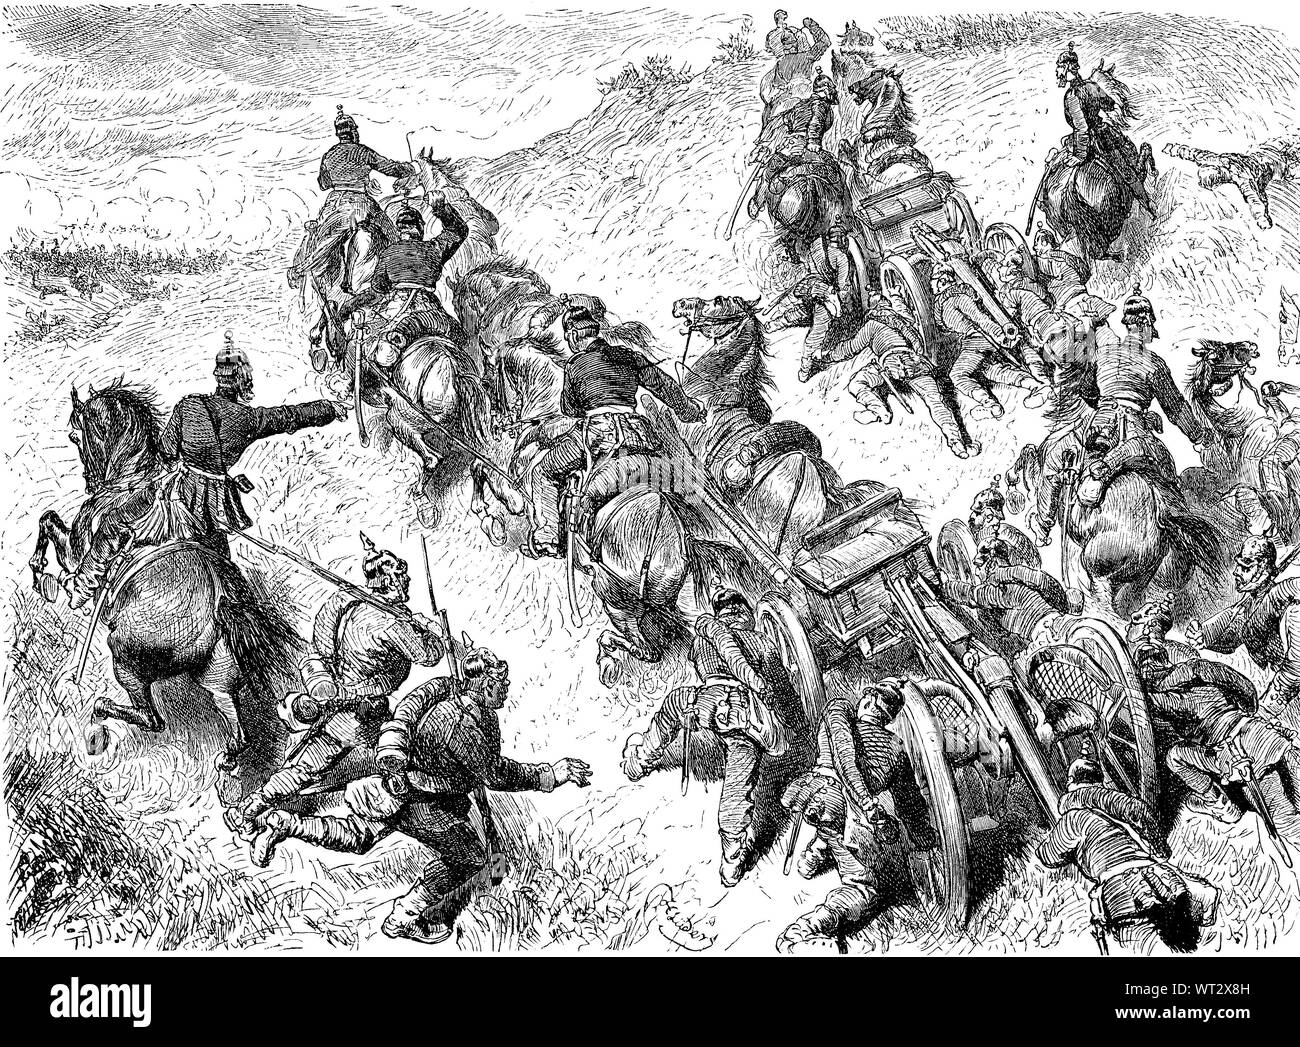 Die Schlacht von Spicheren, auch als die Schlacht von Forbach bekannt, eine Schlacht war während des Deutsch-Französischen Krieges. Die Besetzung der Spicherer Höhen. Schlacht bei Spichern, Bataille de Forbach, 6. August 1870, eine Schlacht des Deutsch-Französischen Krieges, Digital verbesserte Reproduktion einer Abbildung aus dem 19. Jahrhundert Stockfoto